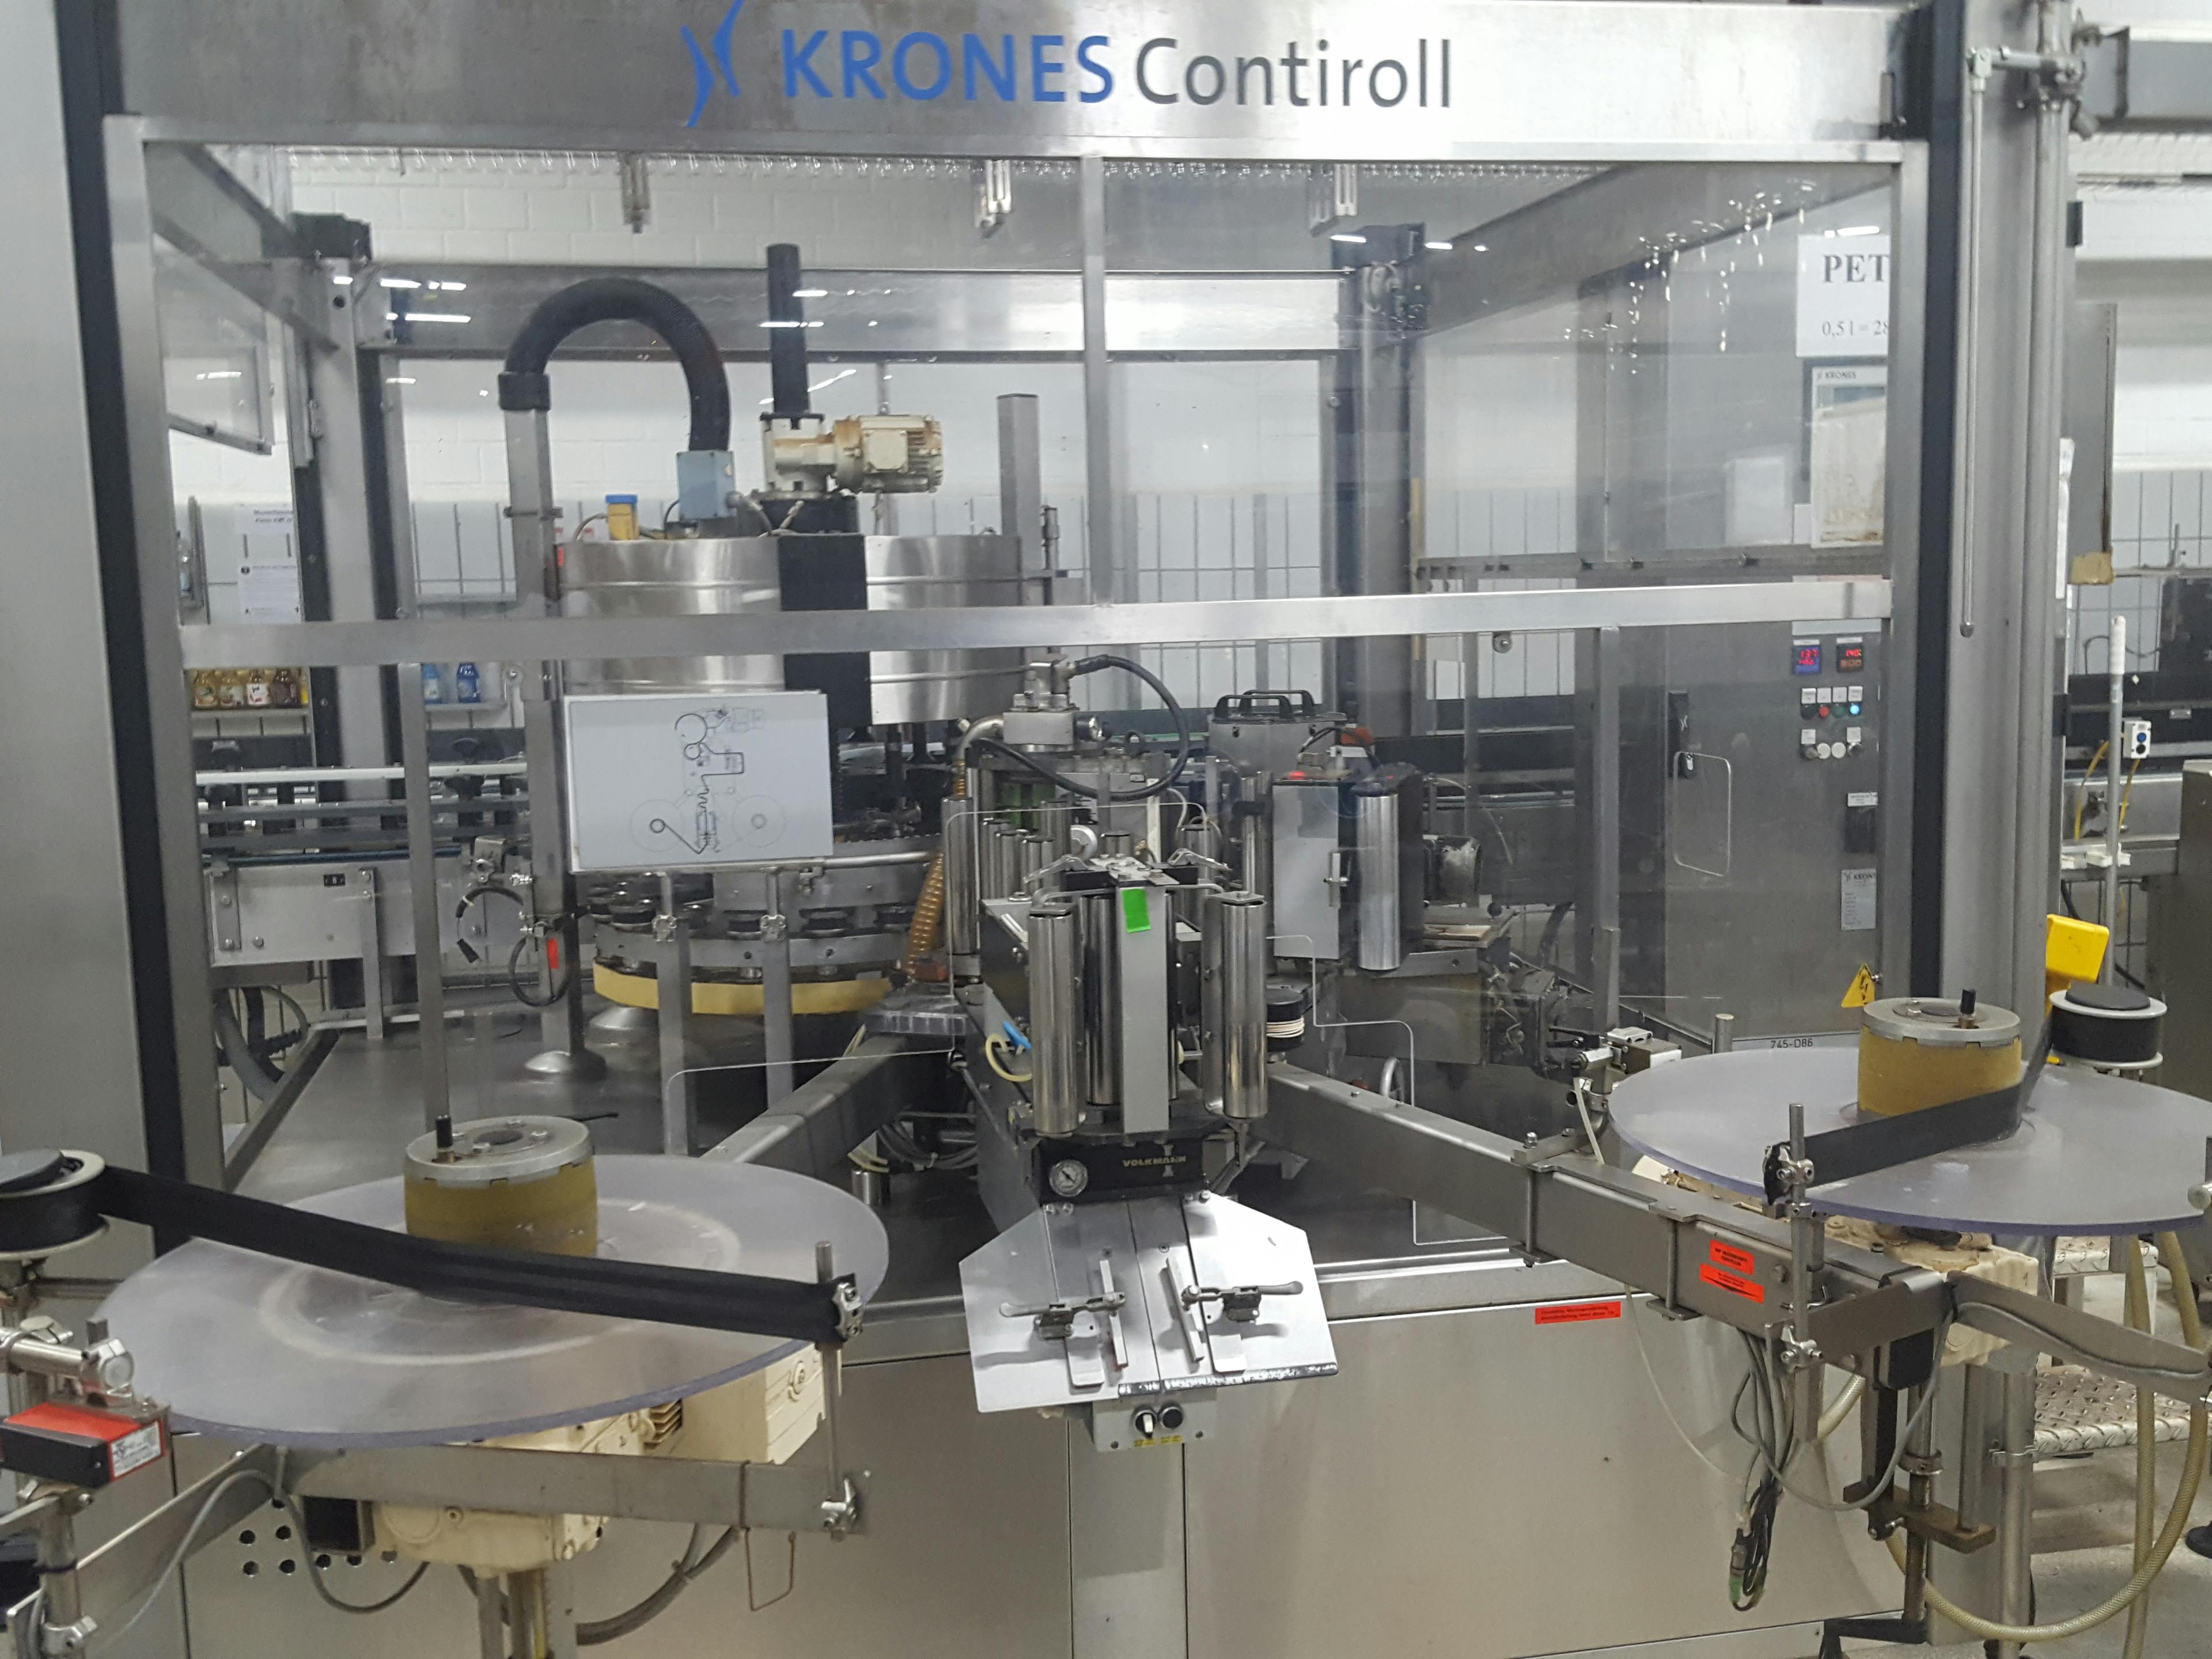 Pohled zepředu na zařízení Krones Contiroll